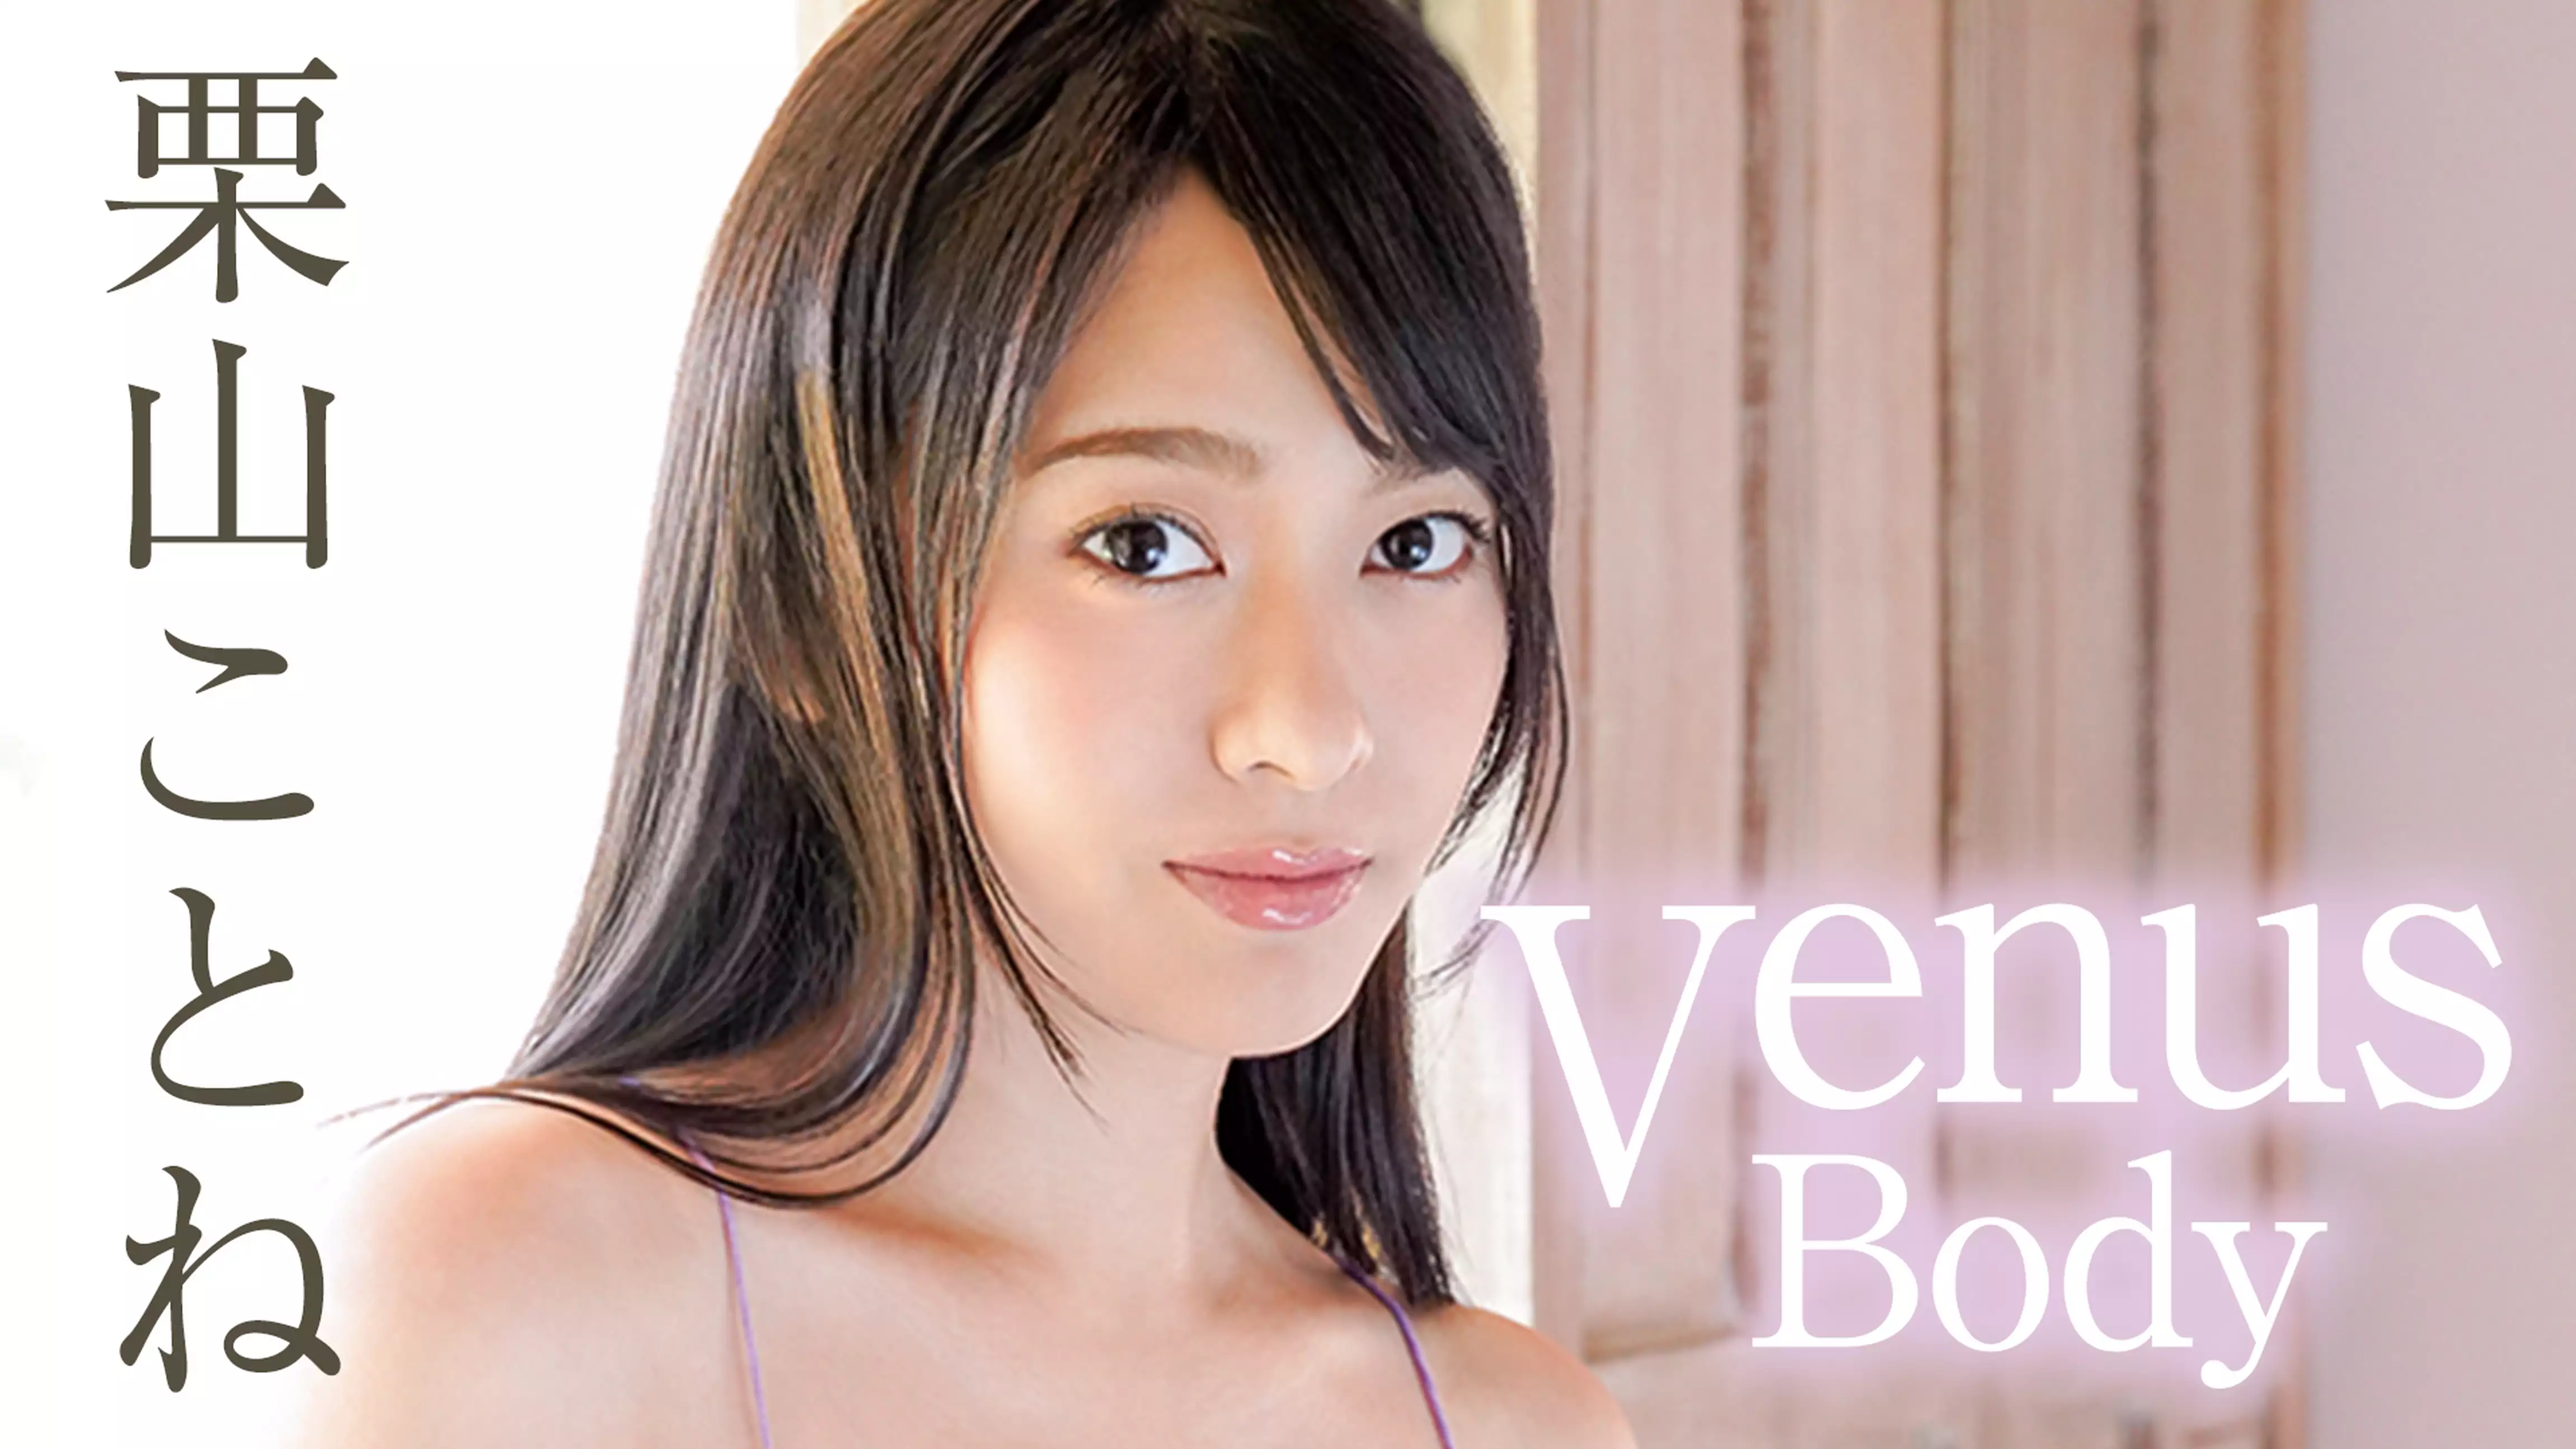 栗山ことね『Venus Body』(セミアダルト / 2020) - 動画配信 | U-NEXT